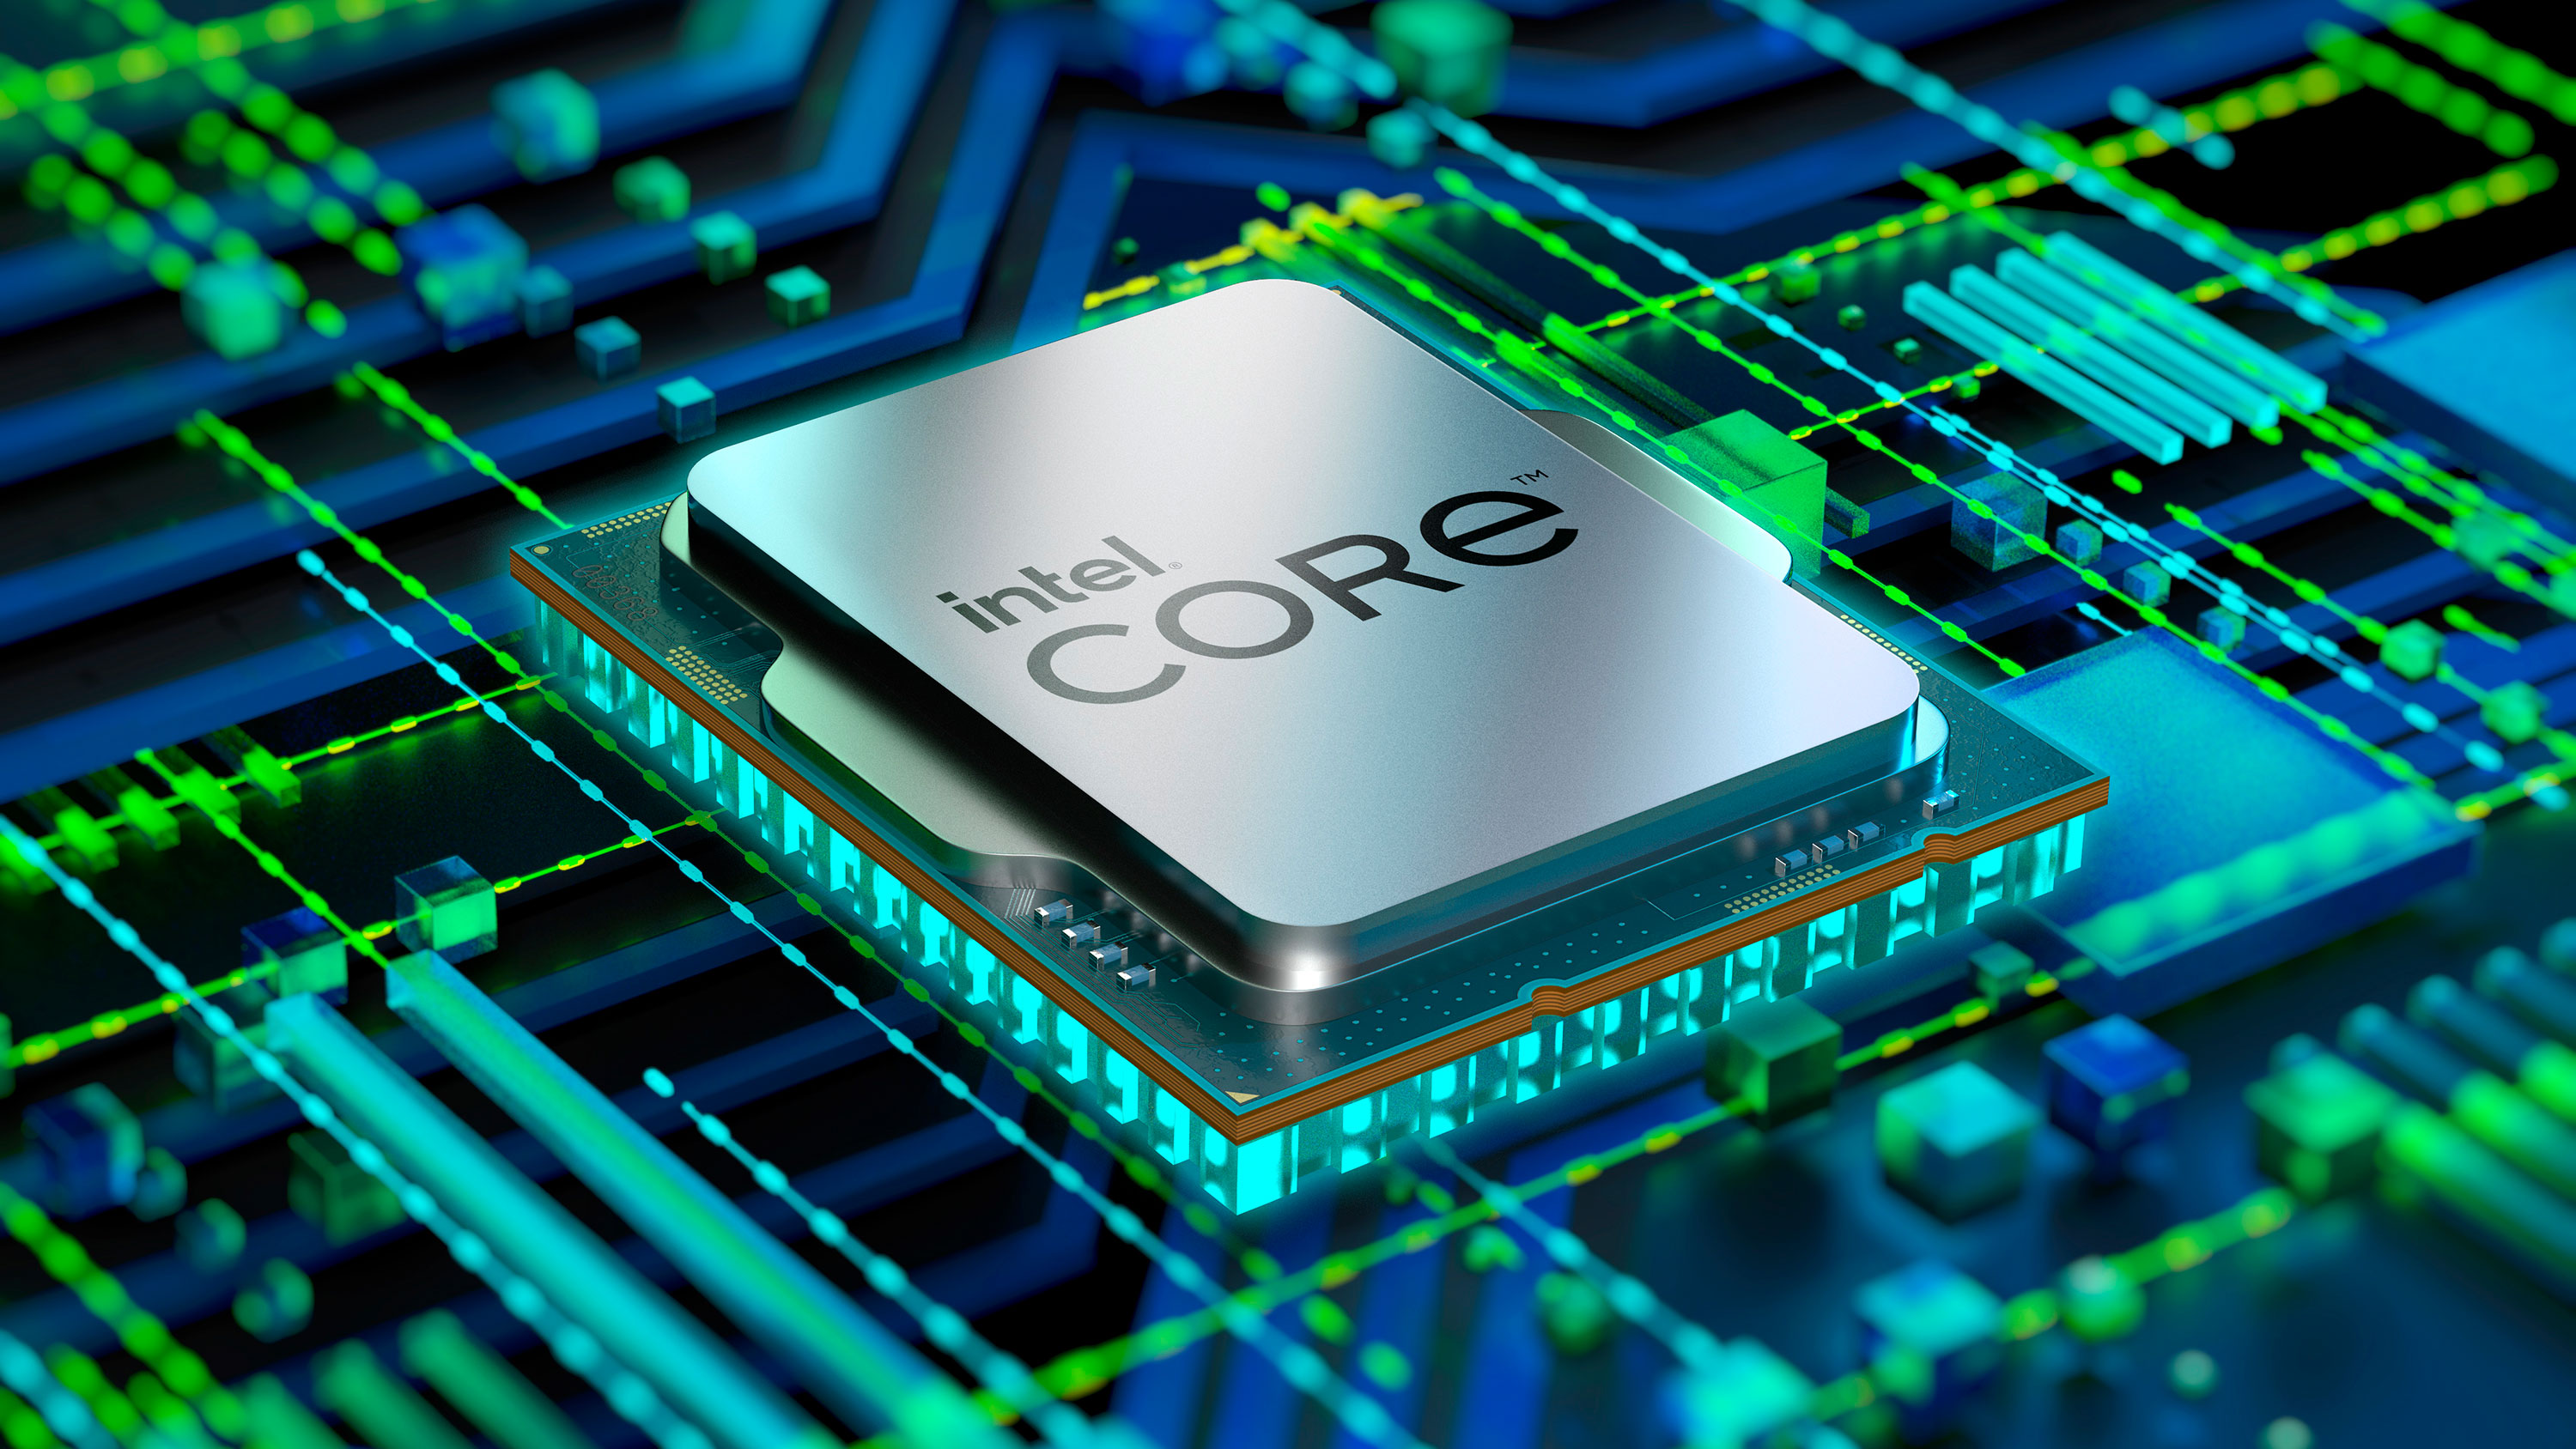 Procesor Intel Core i3-12100 je speciálně určený pro základní desky s paticí LGA1700 z řady Intel 600 Series, kdy se pyšní 4 jádry s maximálním taktem až 4,3 GHz diky TB 2.0 technologii.